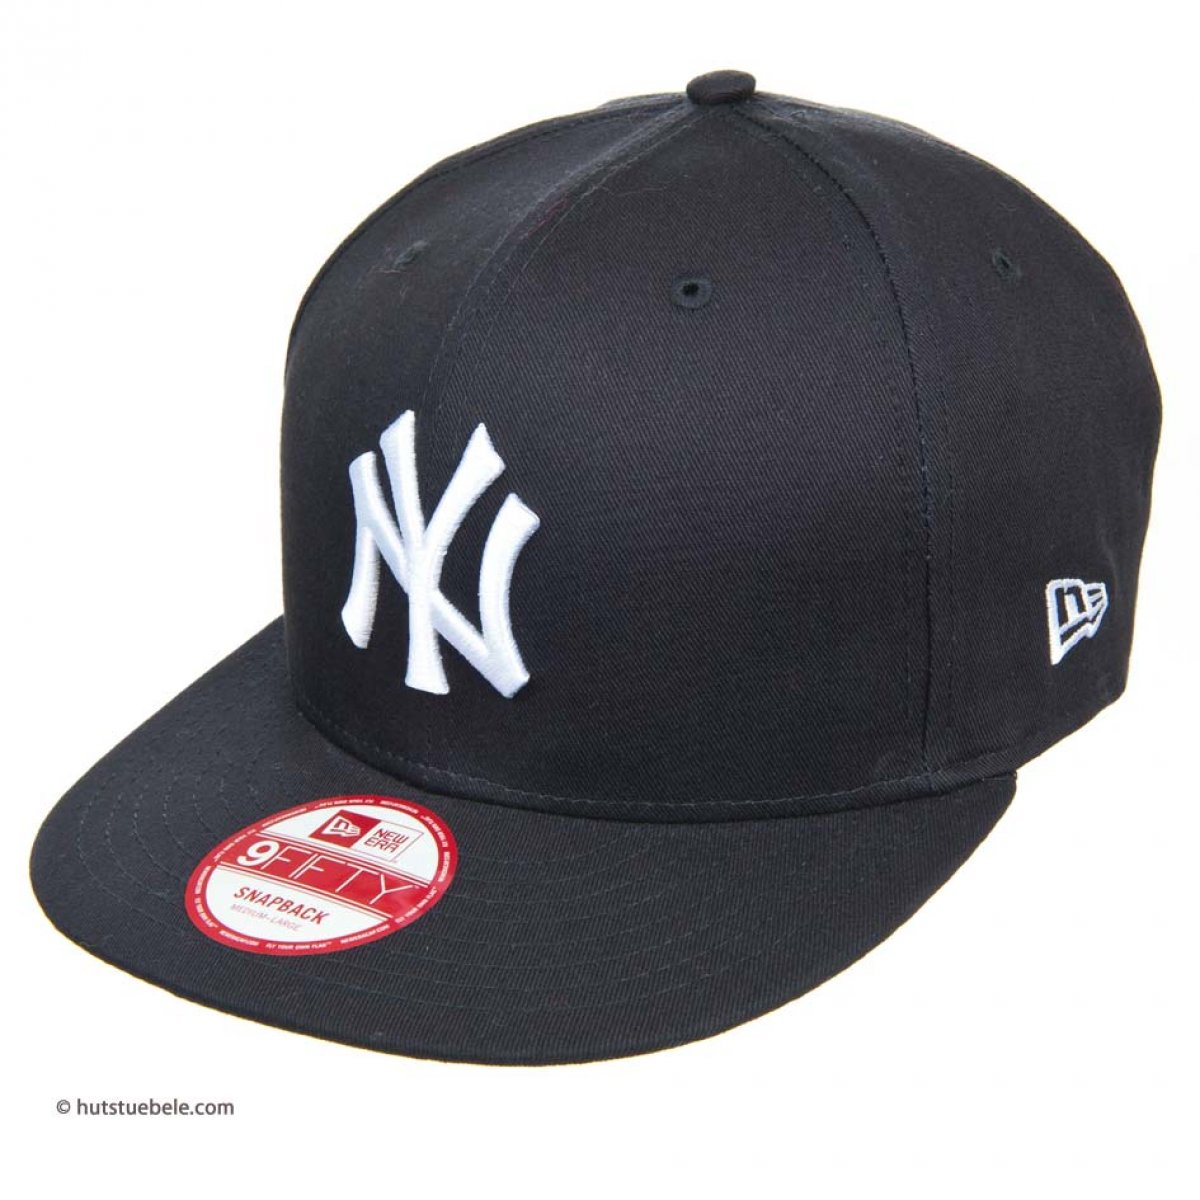 New Era Cap New York Yankees Online Hatshop For Hats Caps